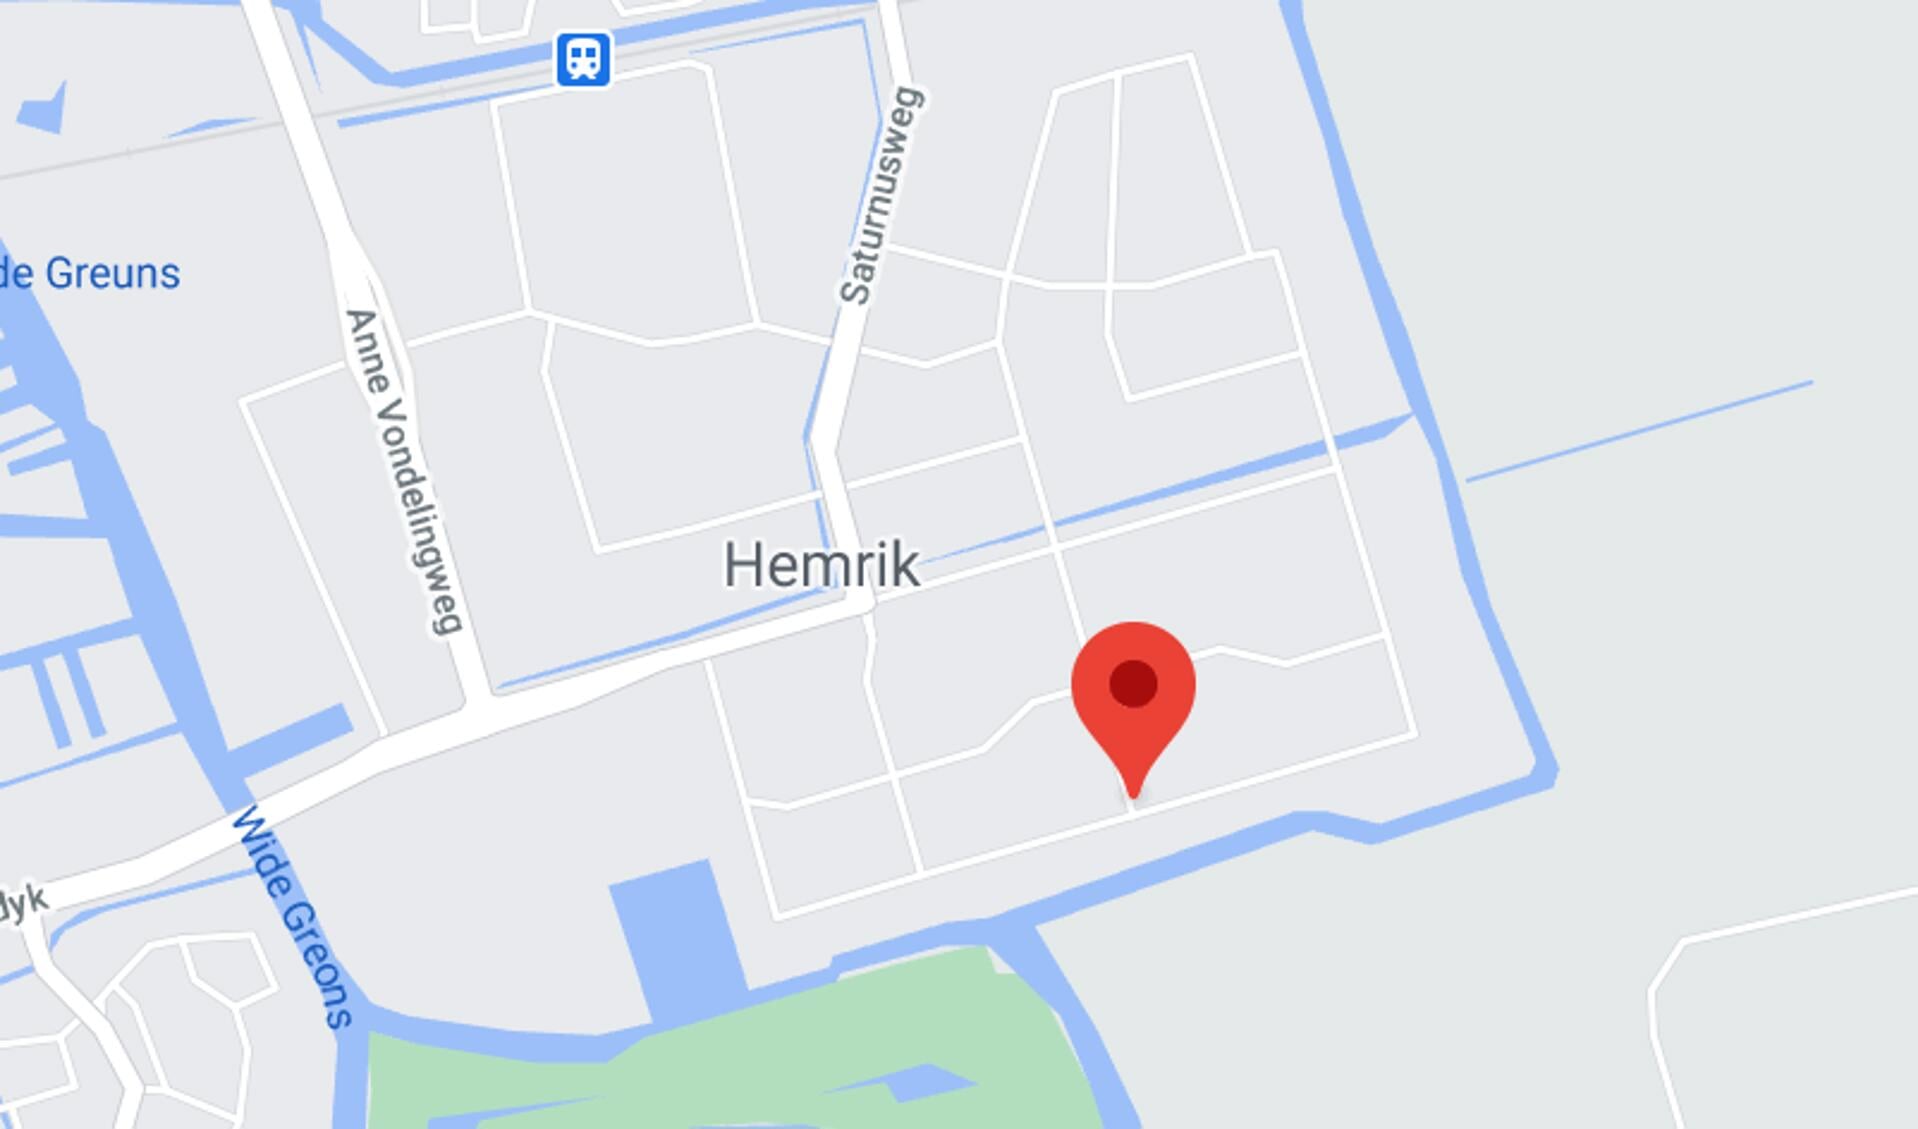 De Ceresweg is de rechte witte streep waar de rode markering van in het midden staat, op bedrijventerrein Hemrik.